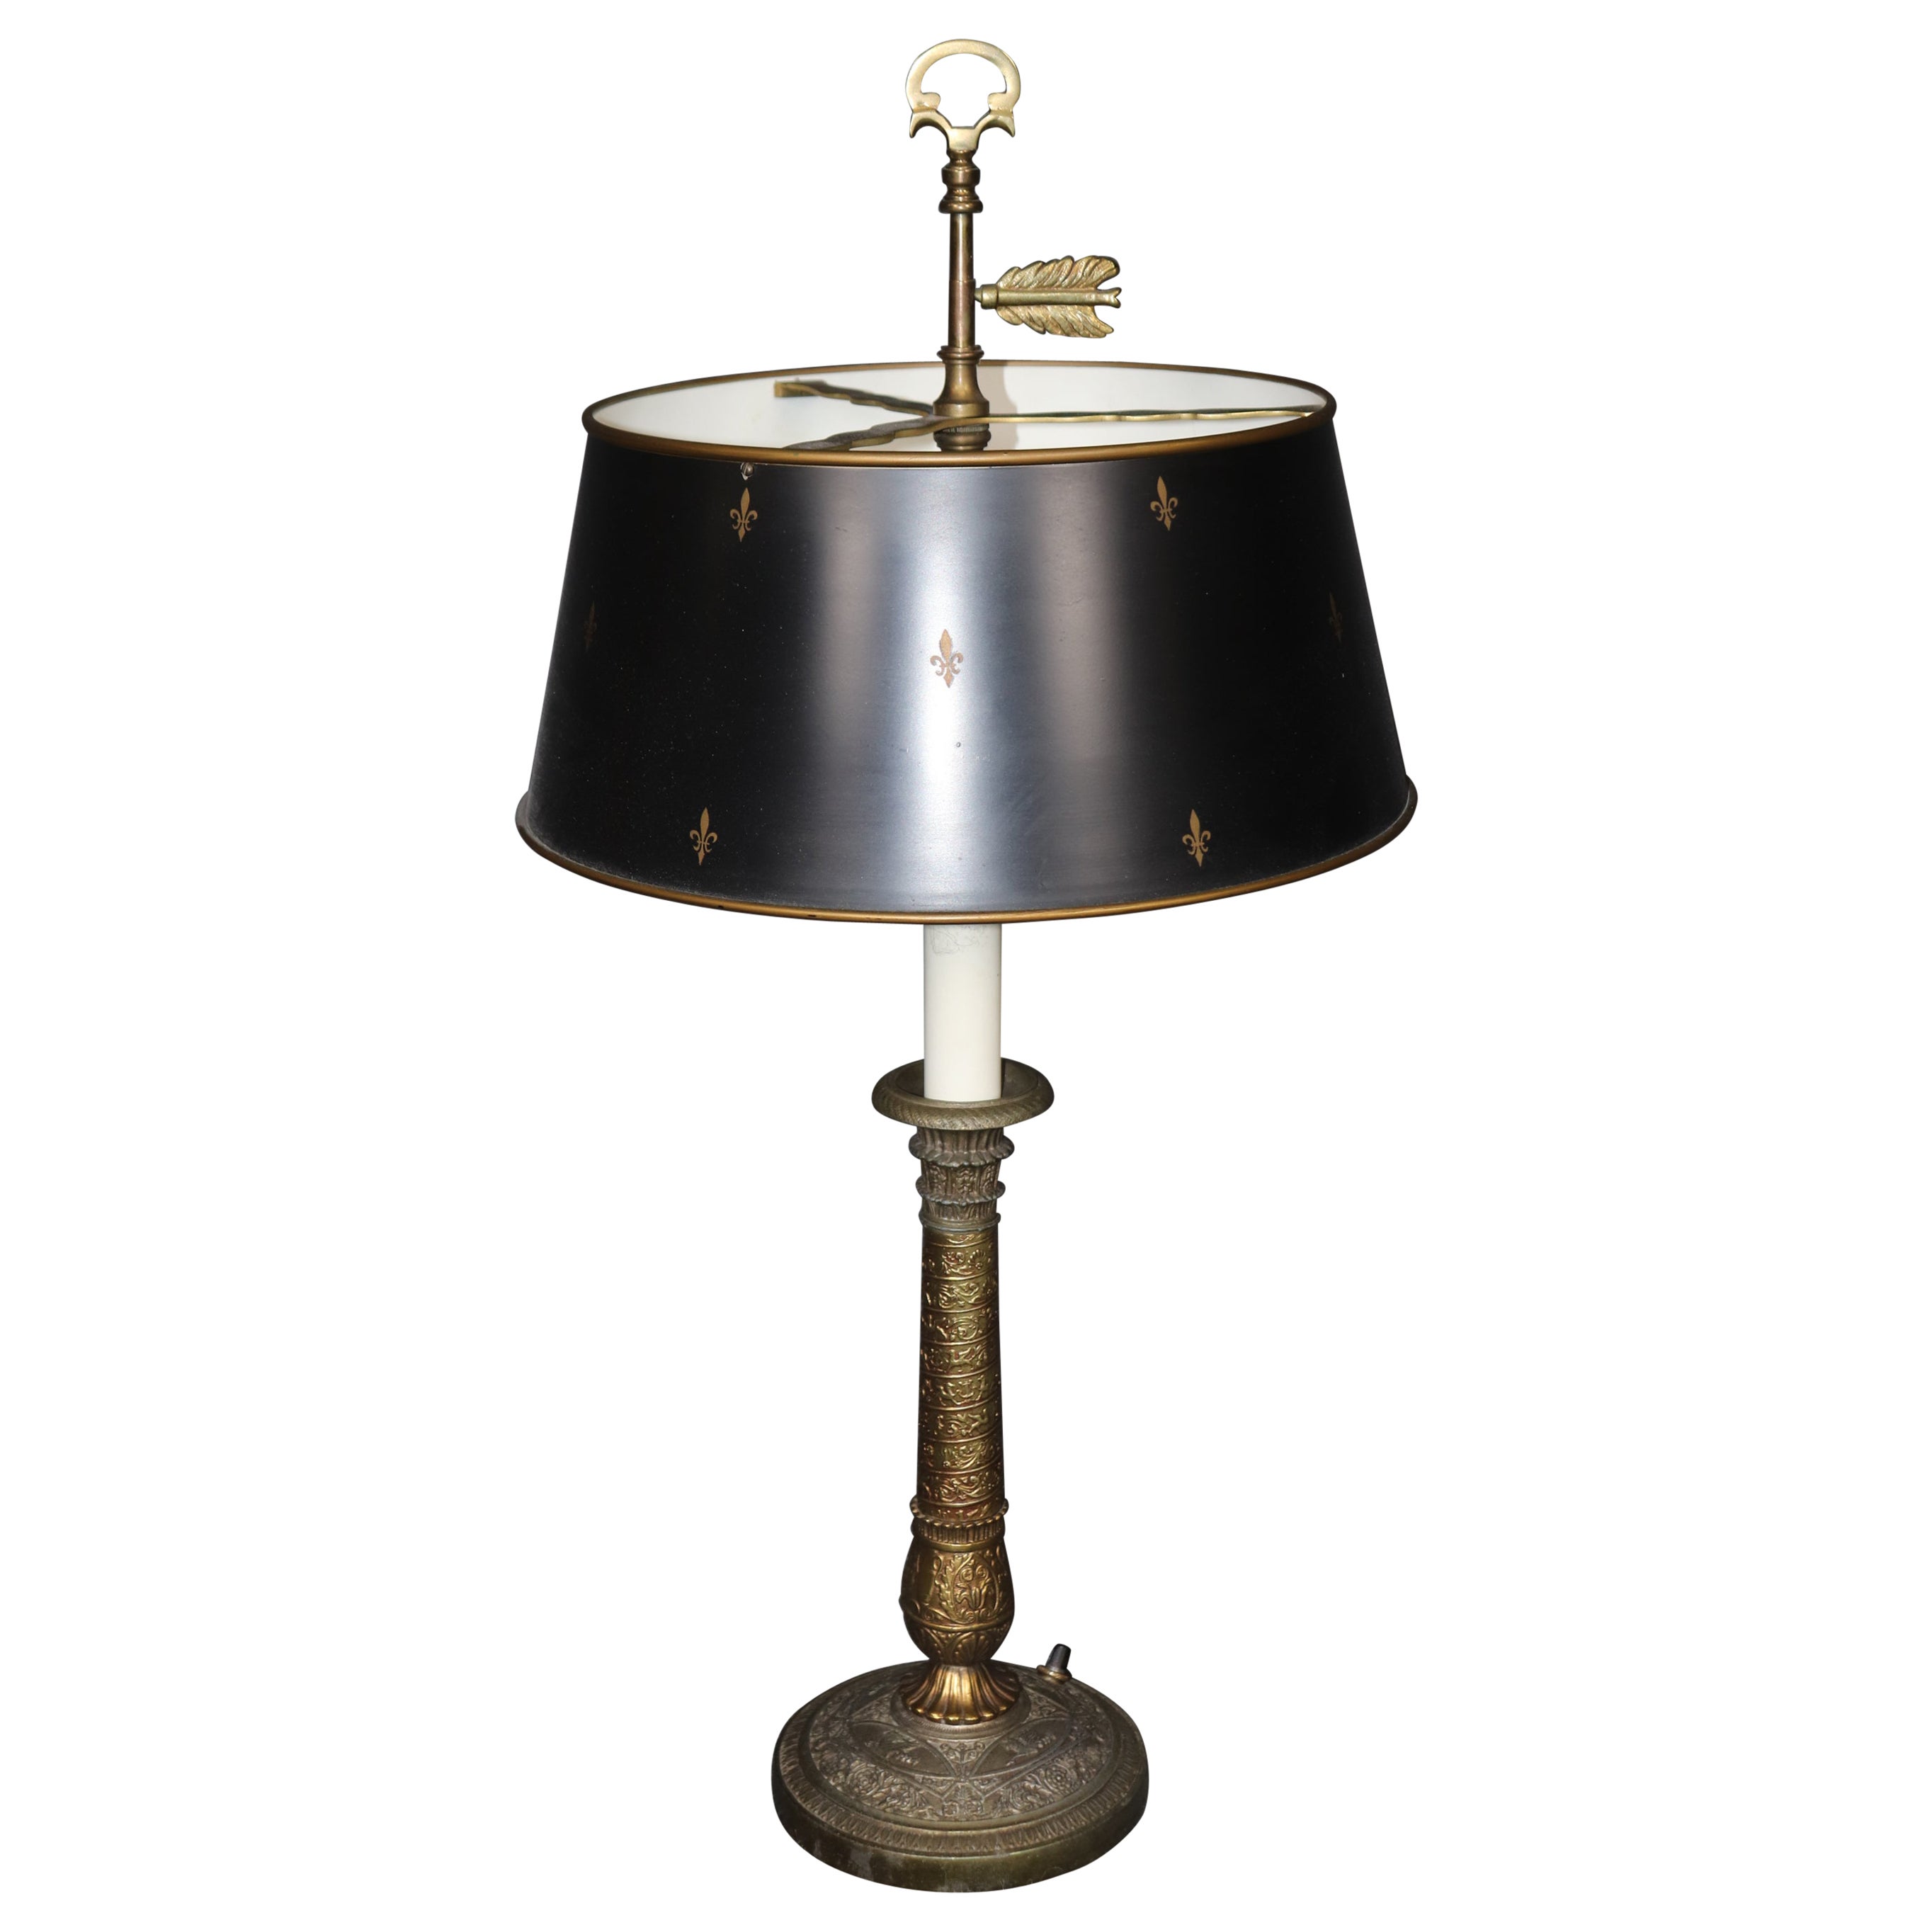 Lampe de table ou bouillotte française en laiton vieilli de qualité supérieure avec abat-jour